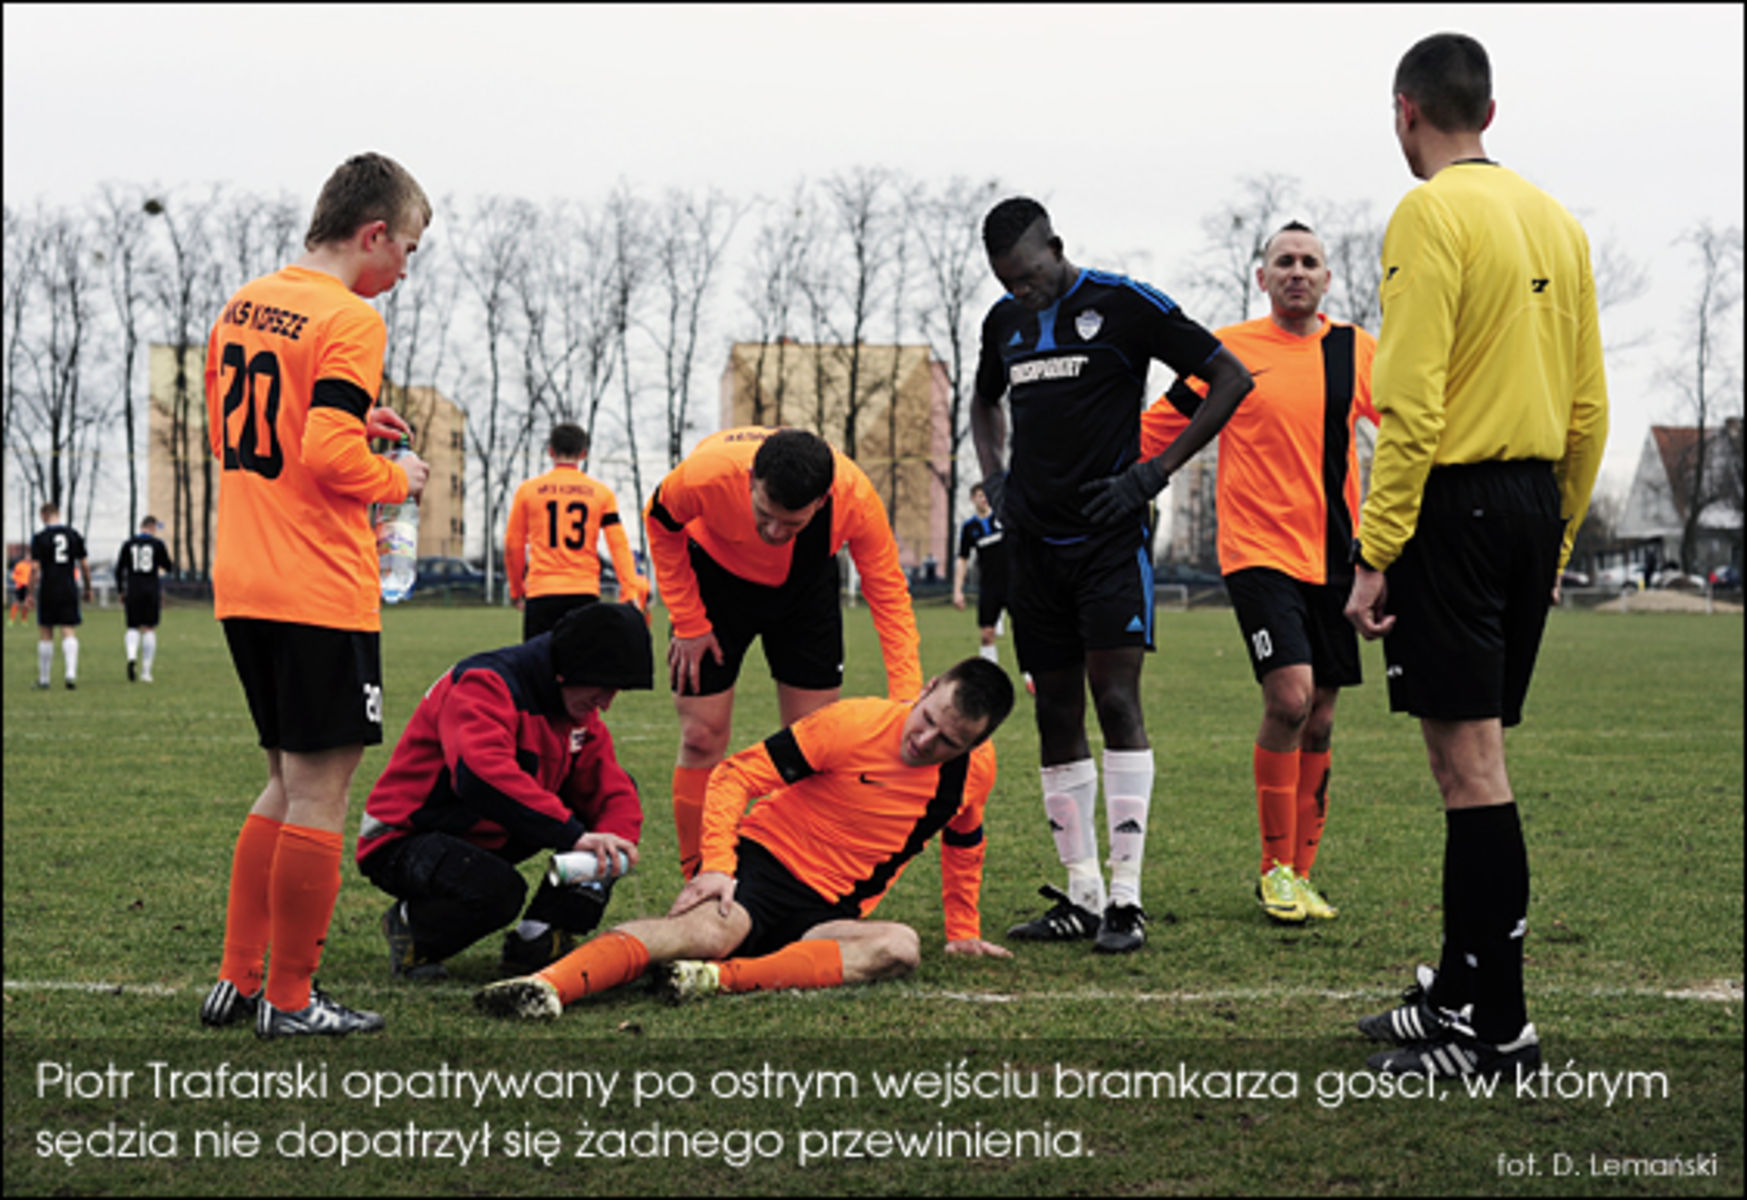 22 marca 2015 roku podczas meczu z Drwęcą trafarski doznał kontuzji. fot. Damian Lemański